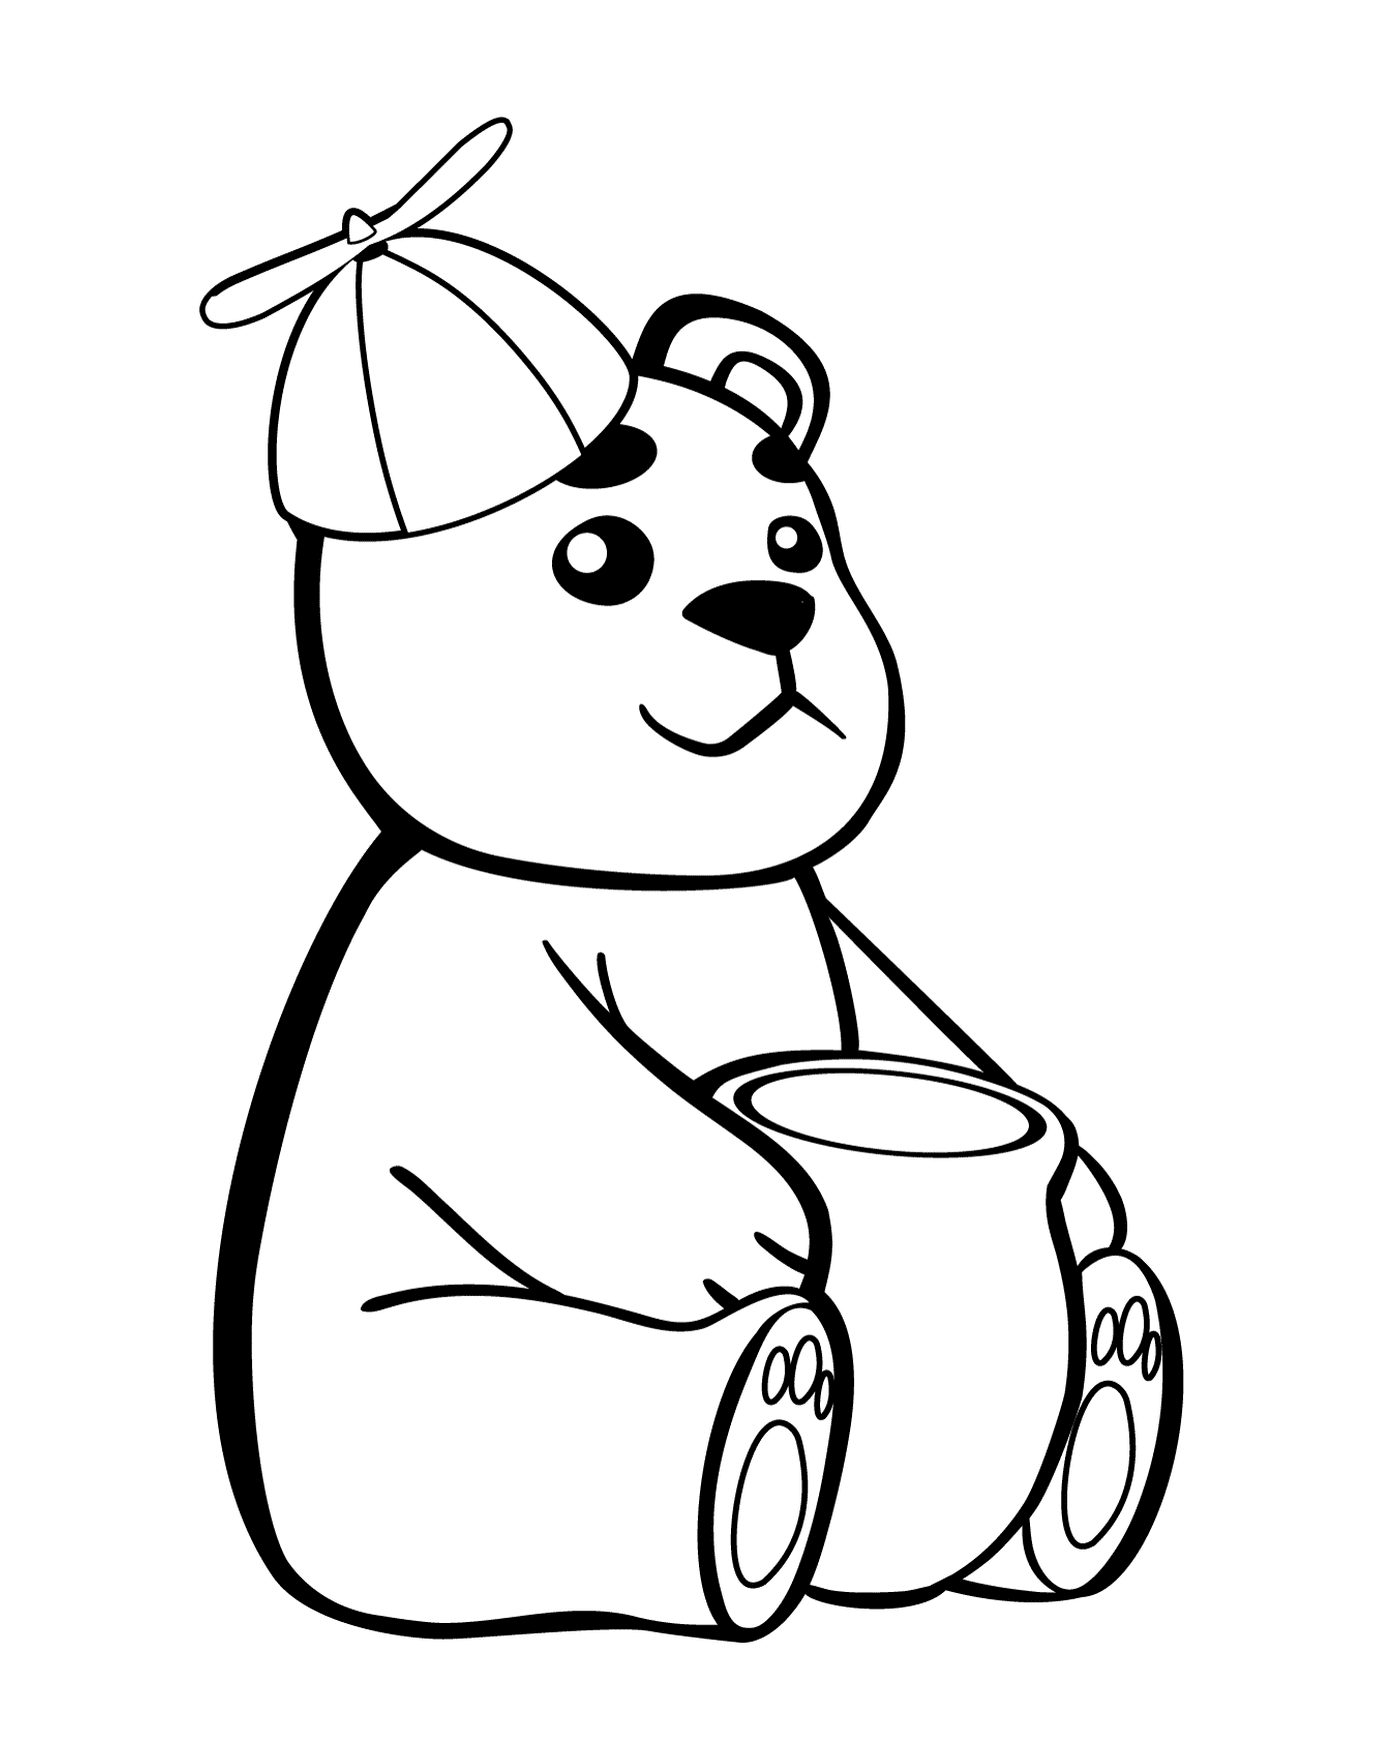  一只熊拿着一壶蜂蜜 